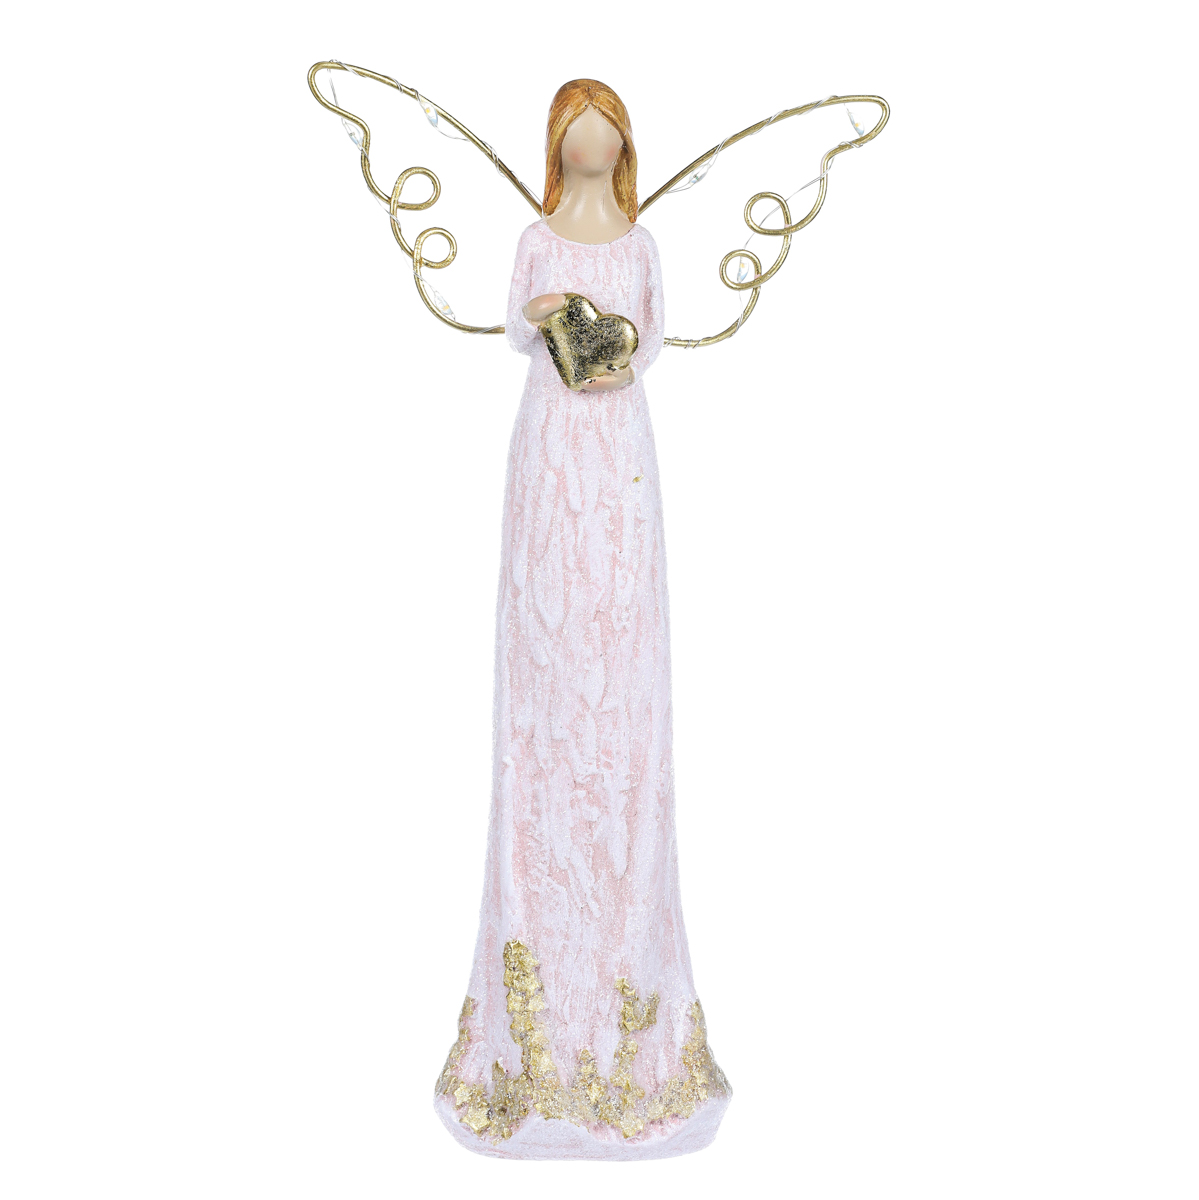 Anděl se svítícími křídly, polyresin.